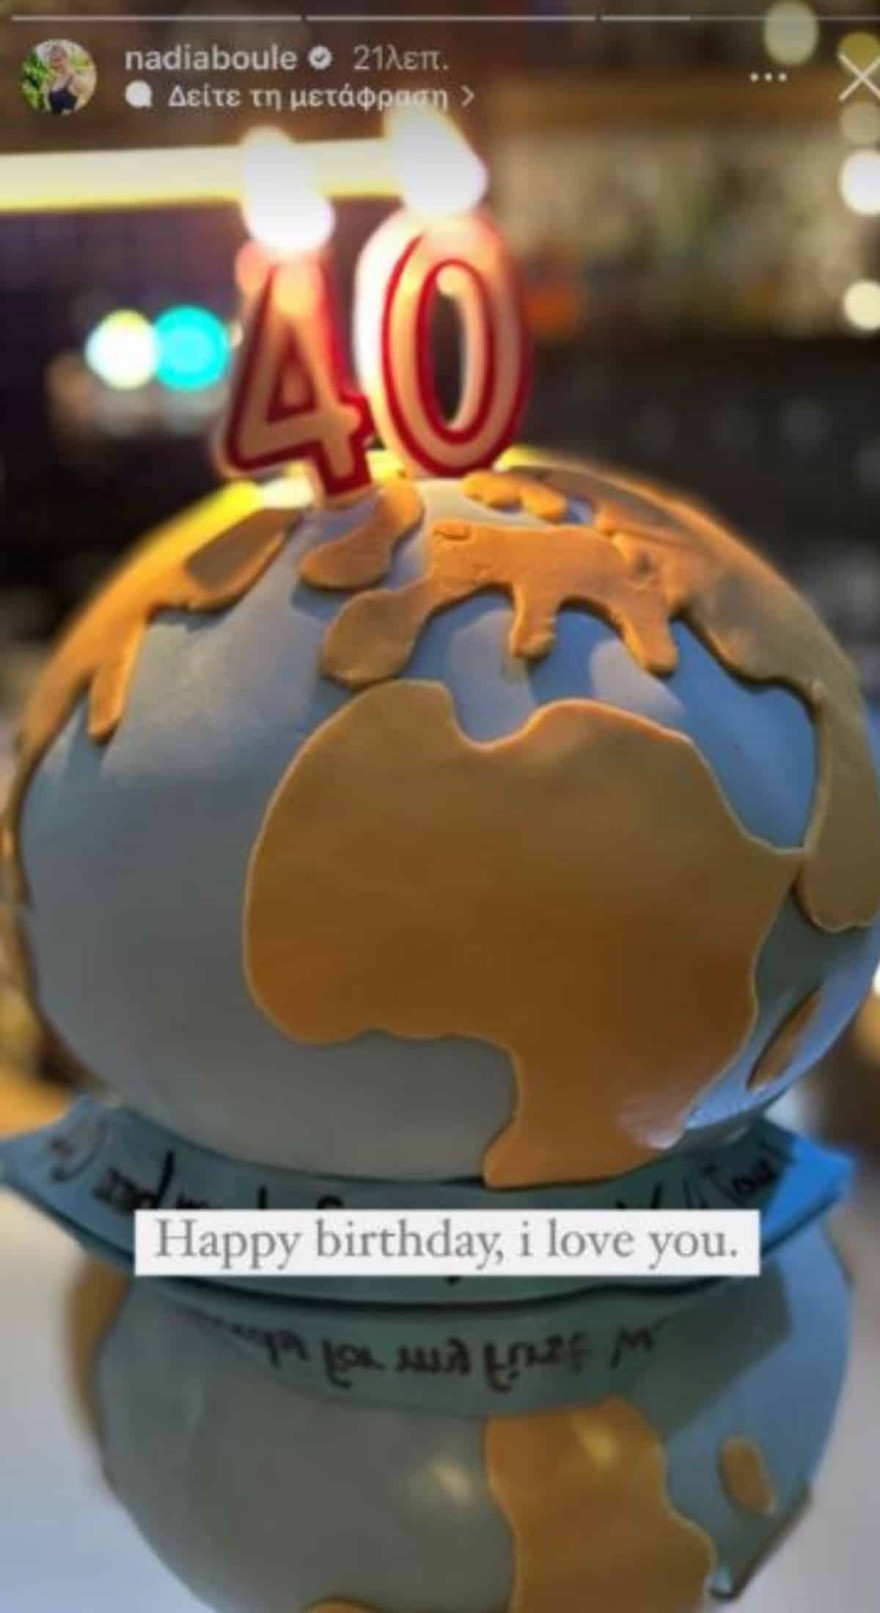 Η τούρτα του Γιώργου Ισαάκ για τα γενέθλιά του και οι ευχές της Νάντιας Μπουλέ 